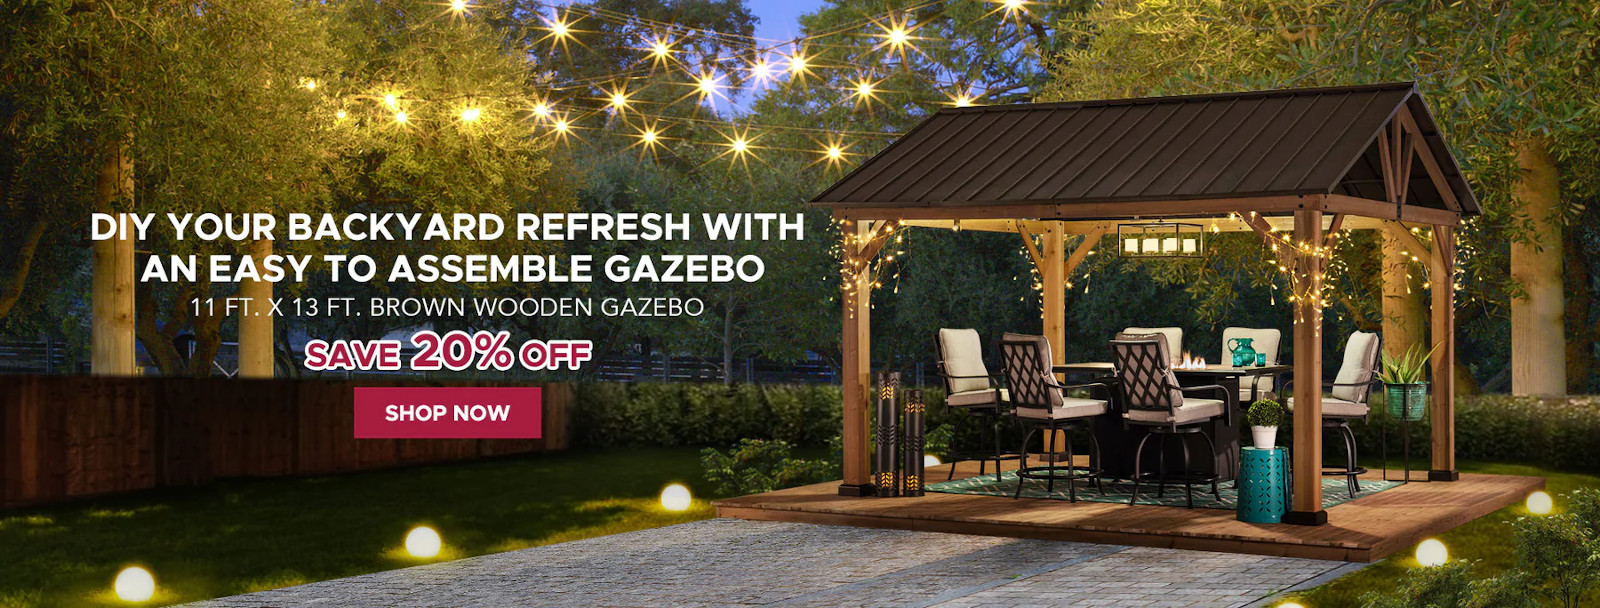 easy assemble gazebo special offer